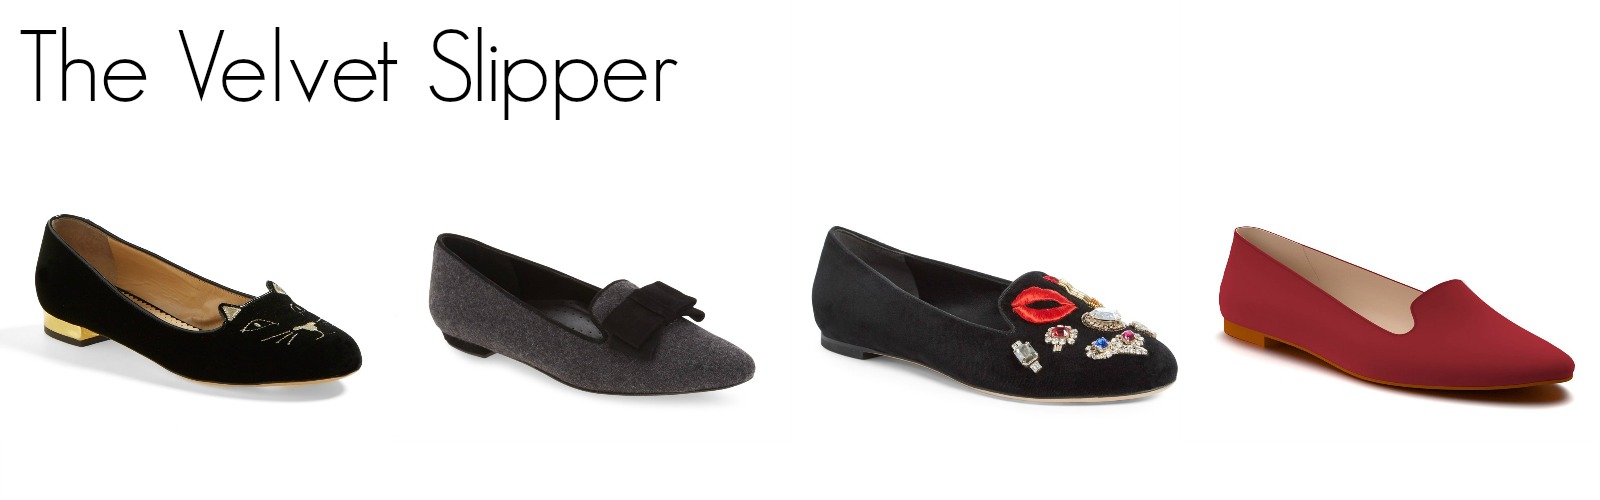 the-velvet-slipper